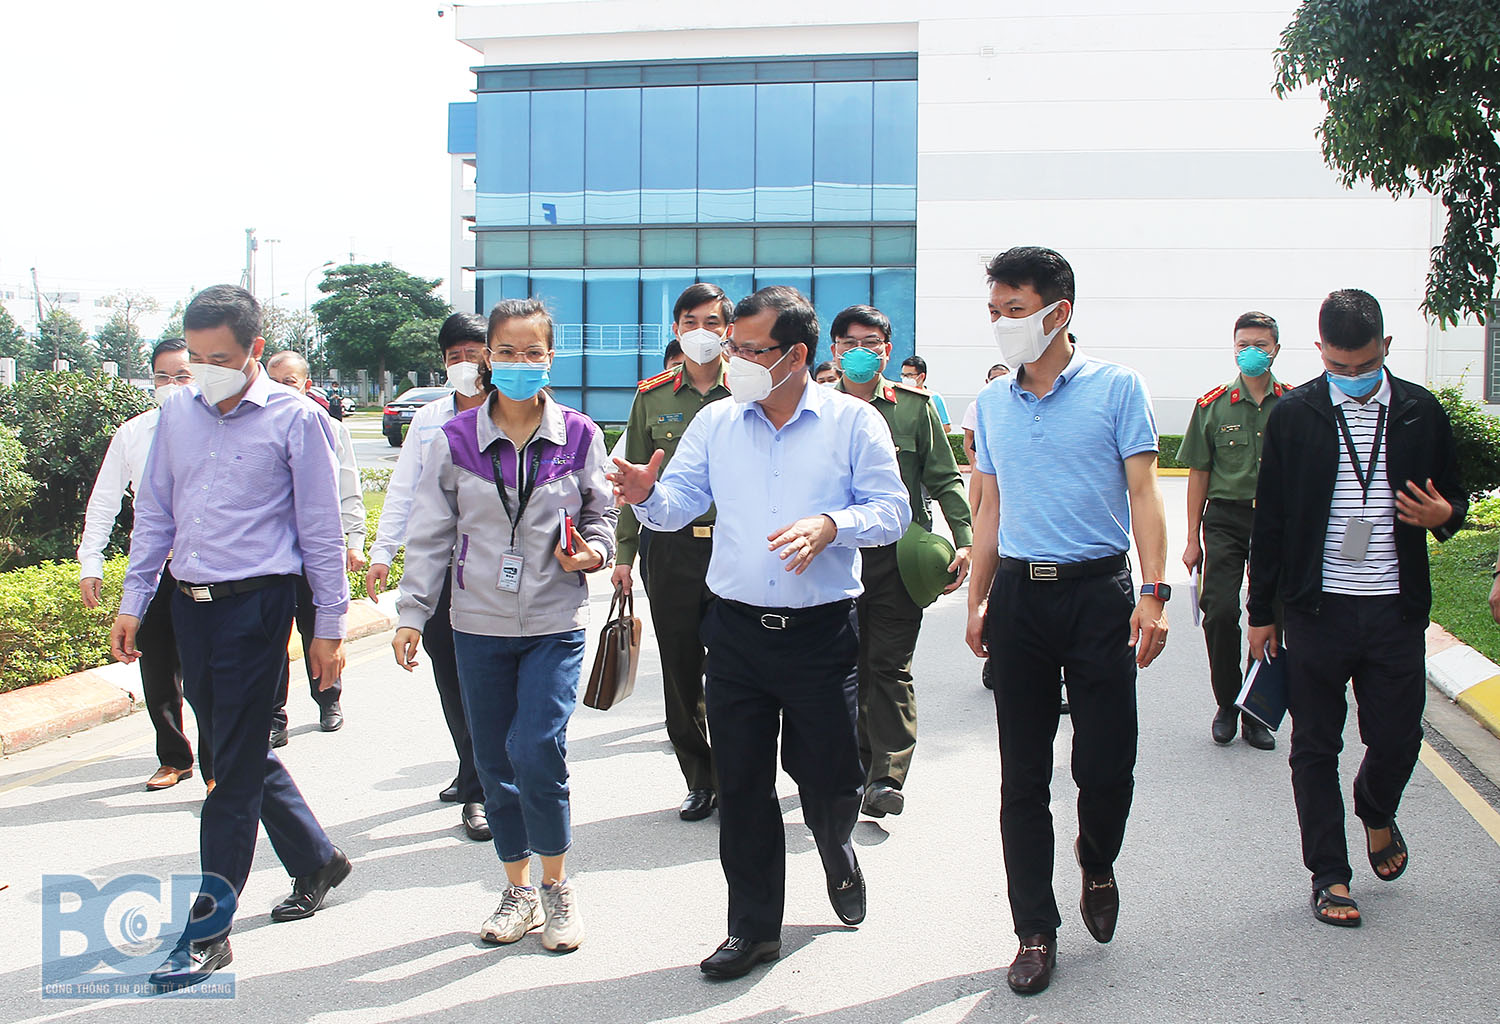 Phó Chủ tịch UBND tỉnh Phan Thế Tuấn: Sàng lọc và quản lý chặt công nhân quay trở lại làm việc